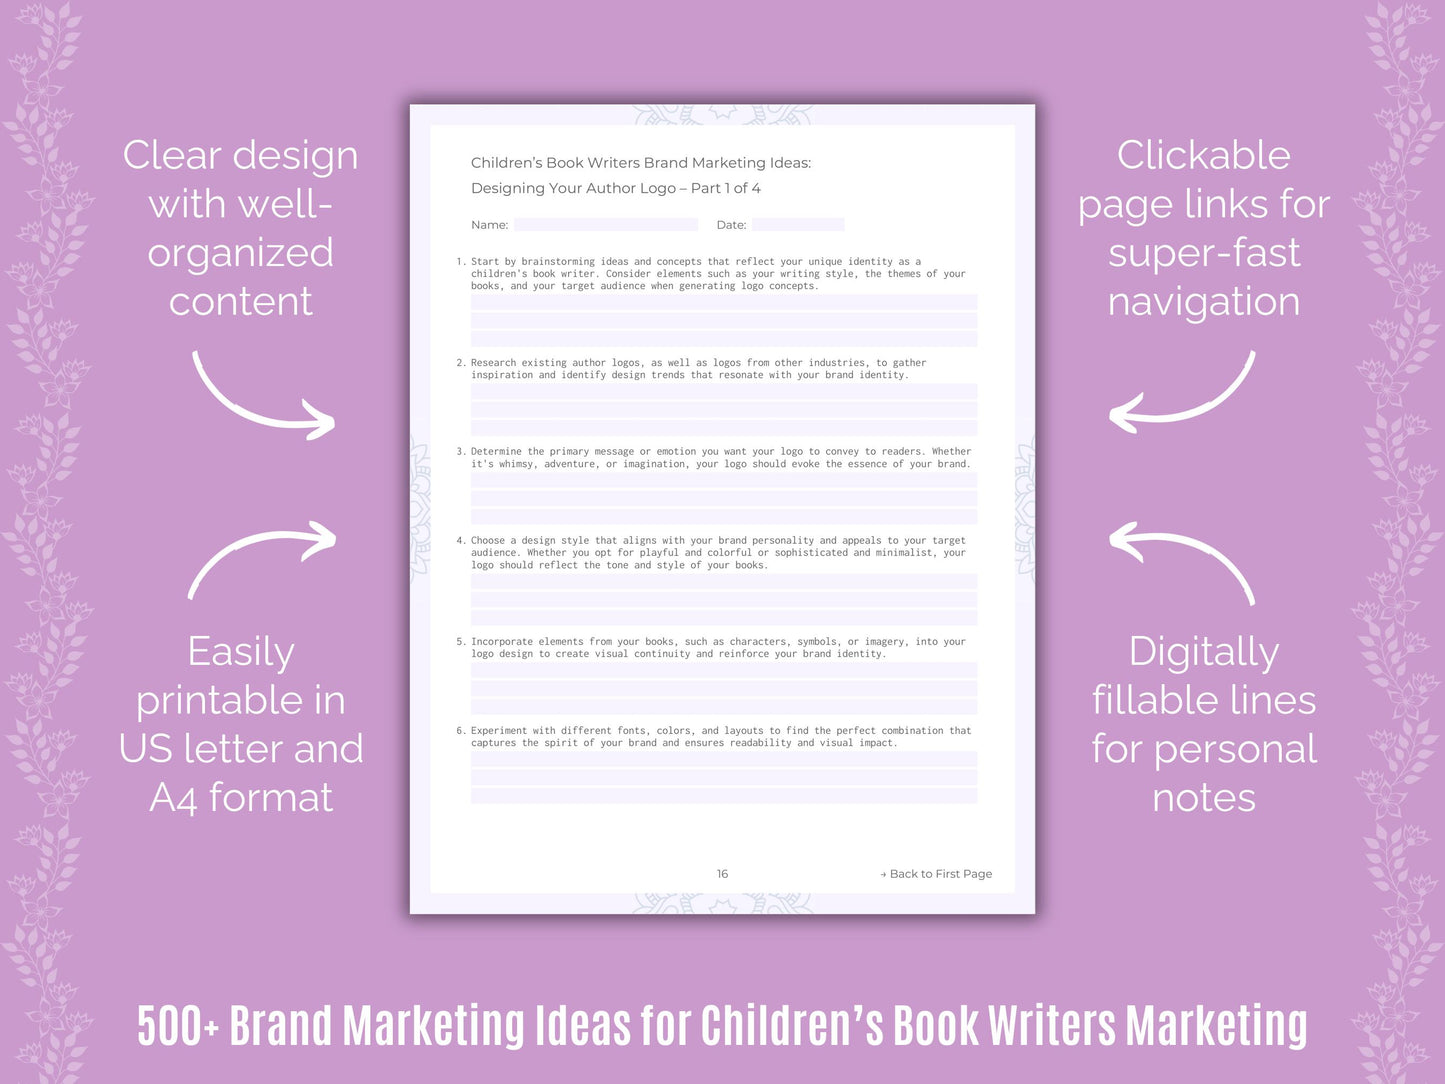 Children’s Book Writers Brand Marketing Ideas Resource